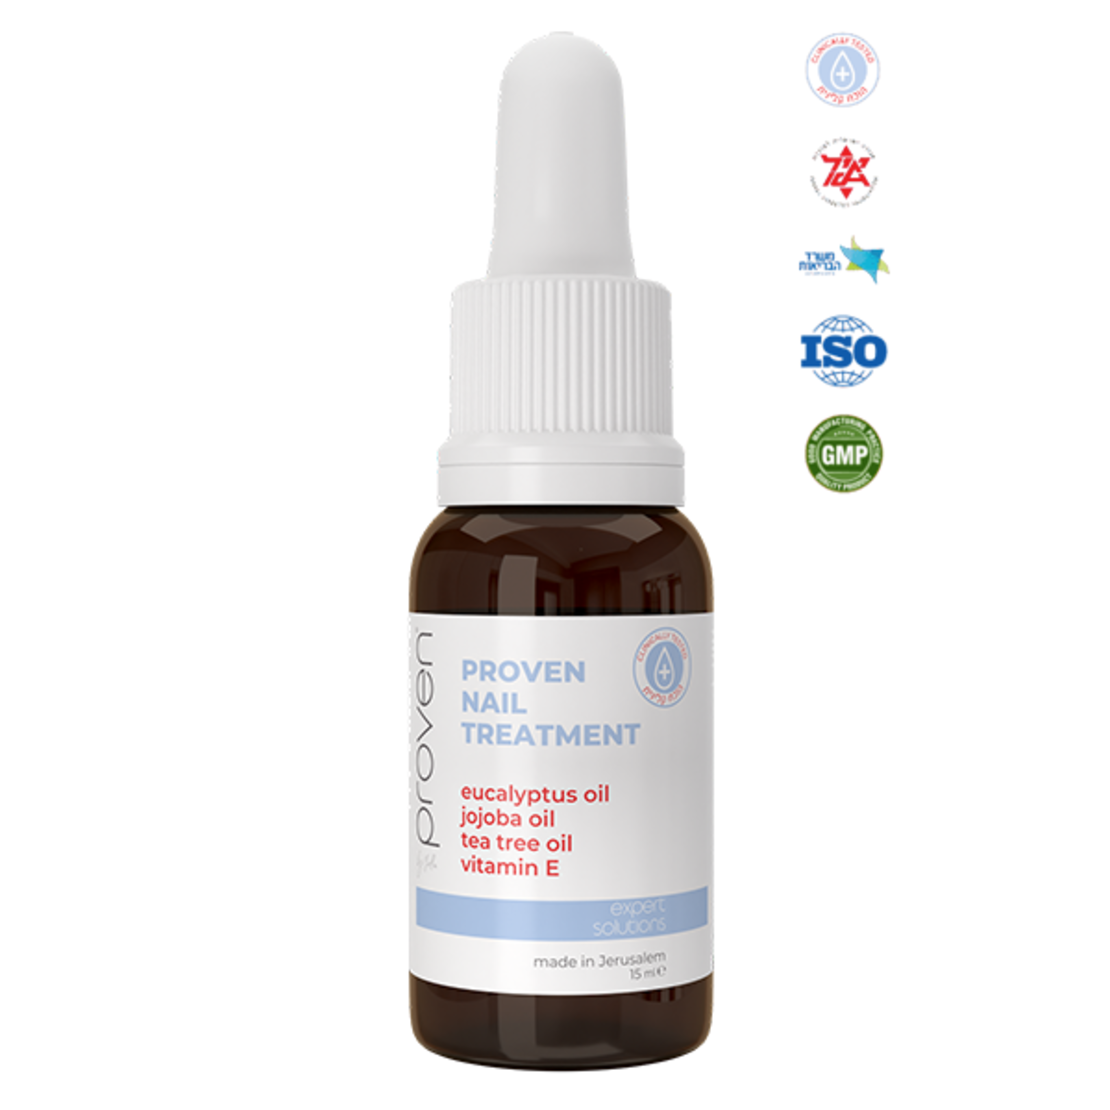 Active Nail Solution PROVEN by yullia - Nail Fungus Treatment Kit - 15 ml